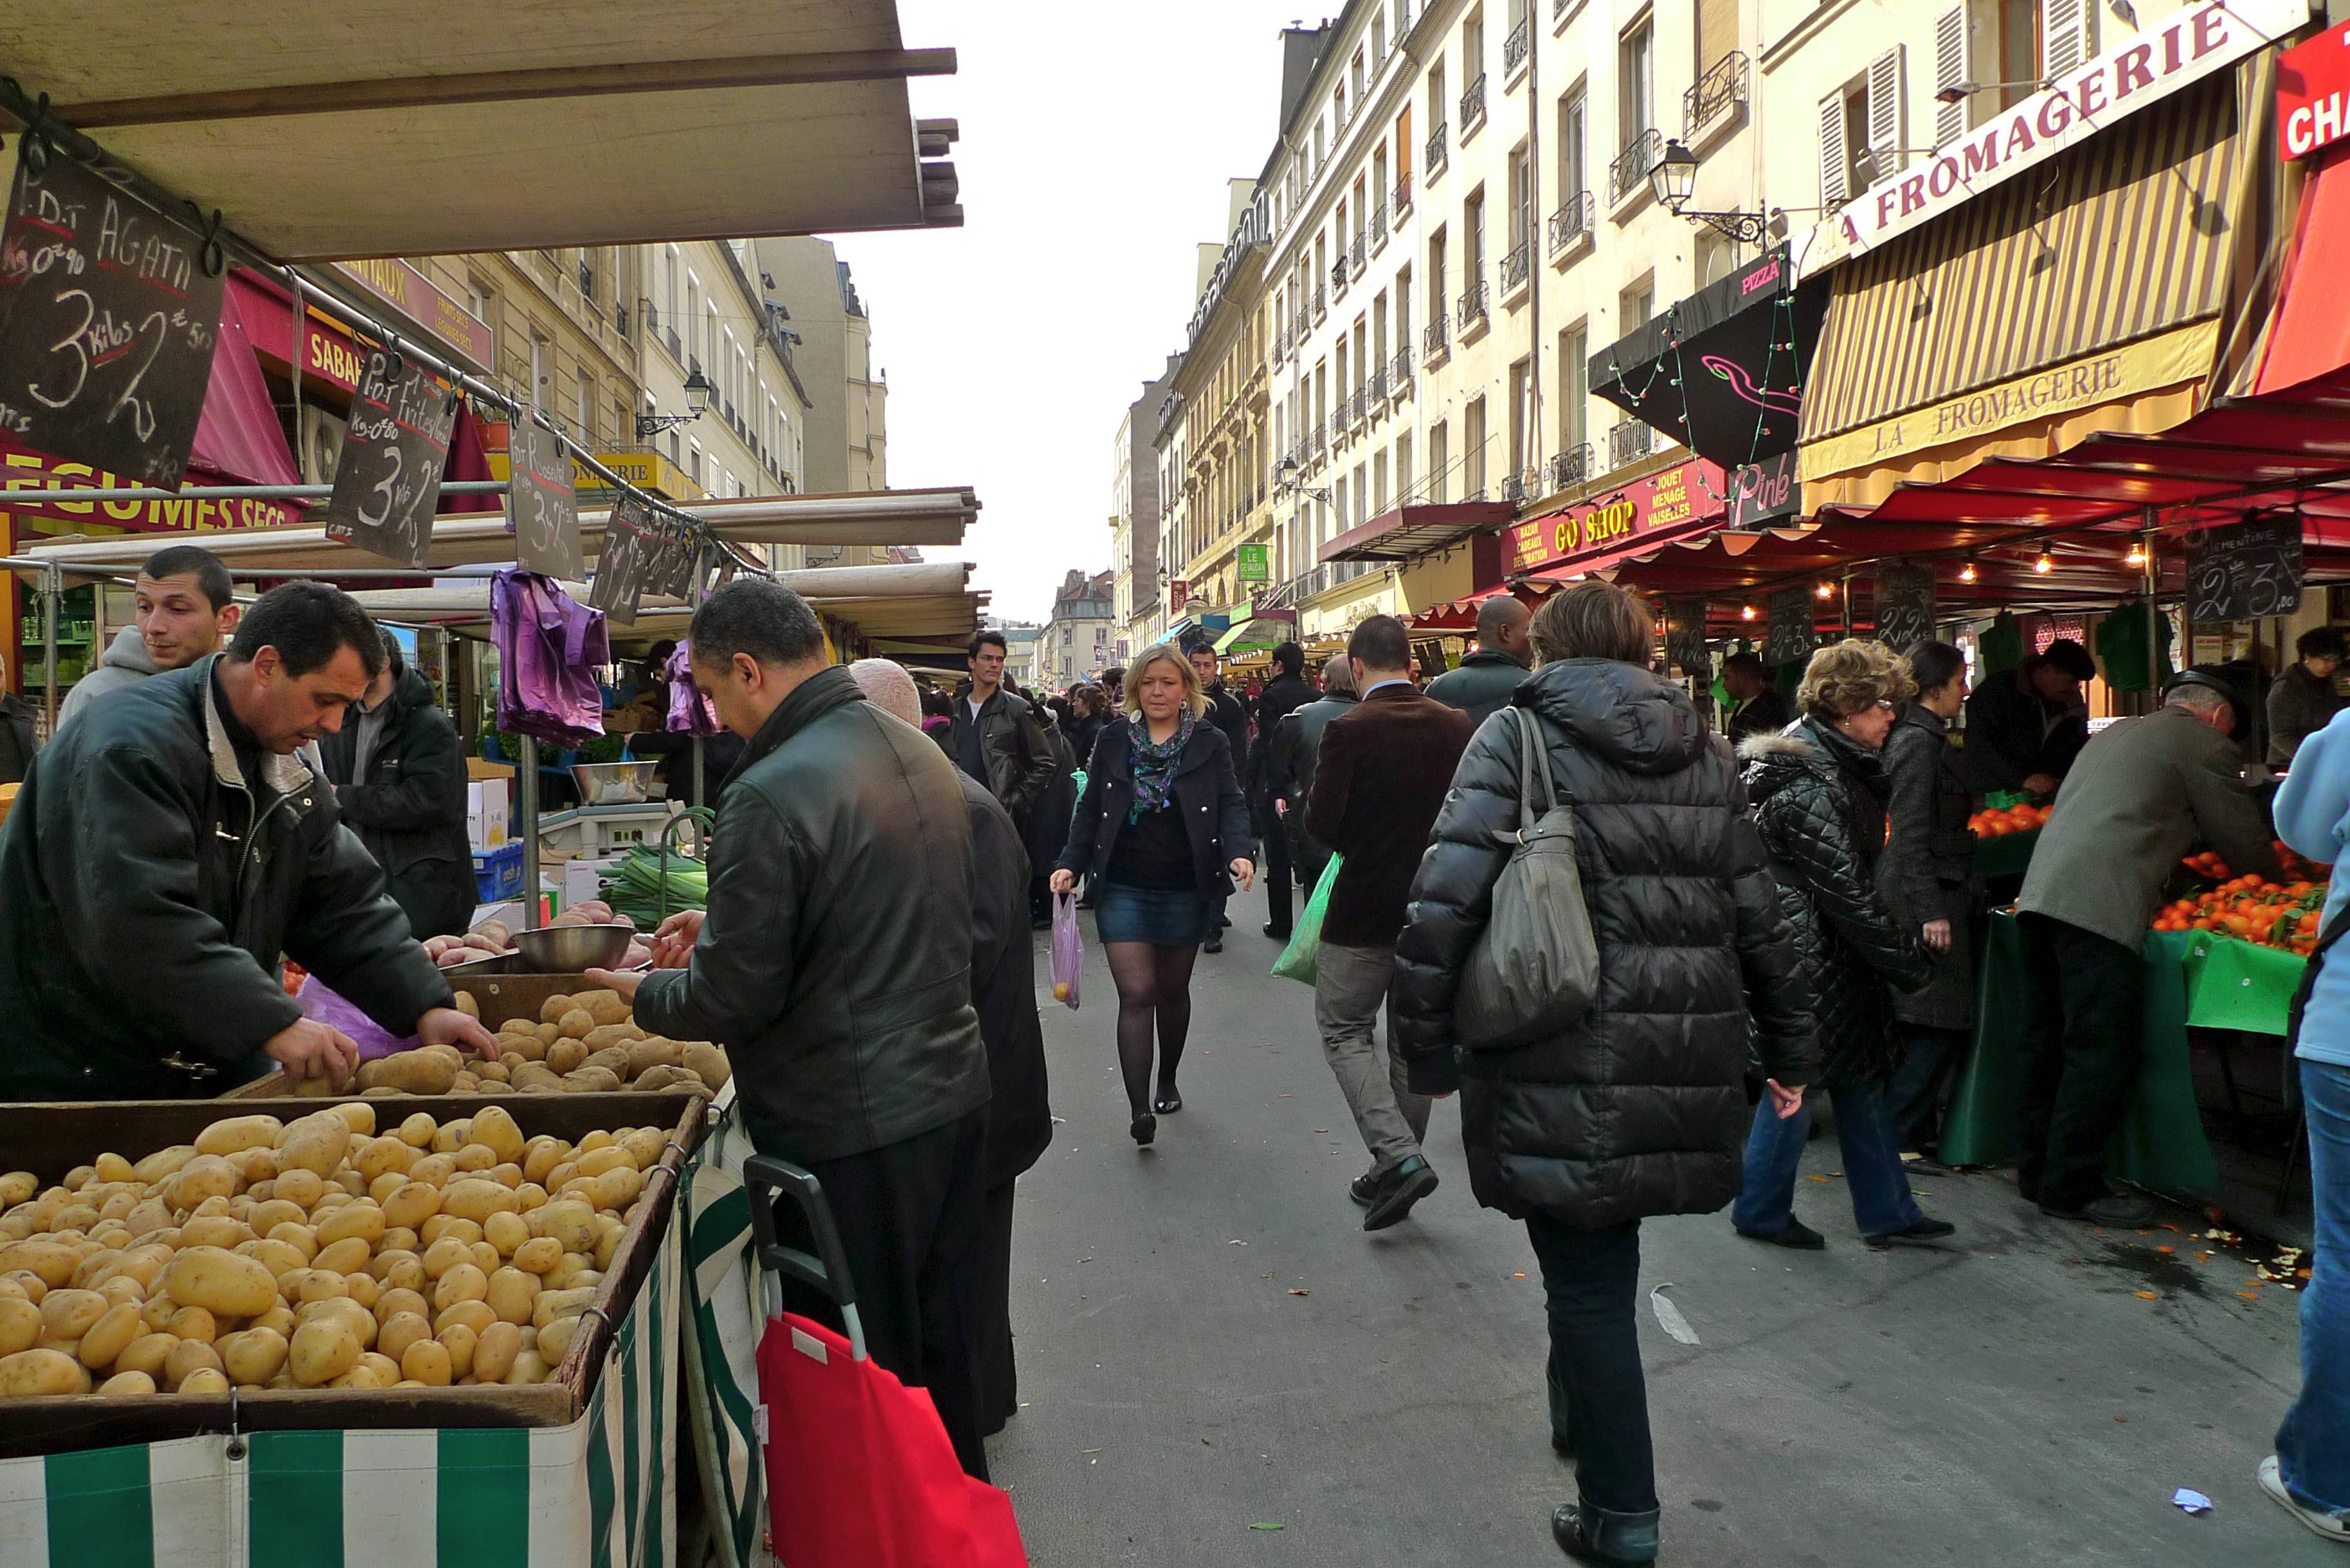 5 фермерских рынков во Франции